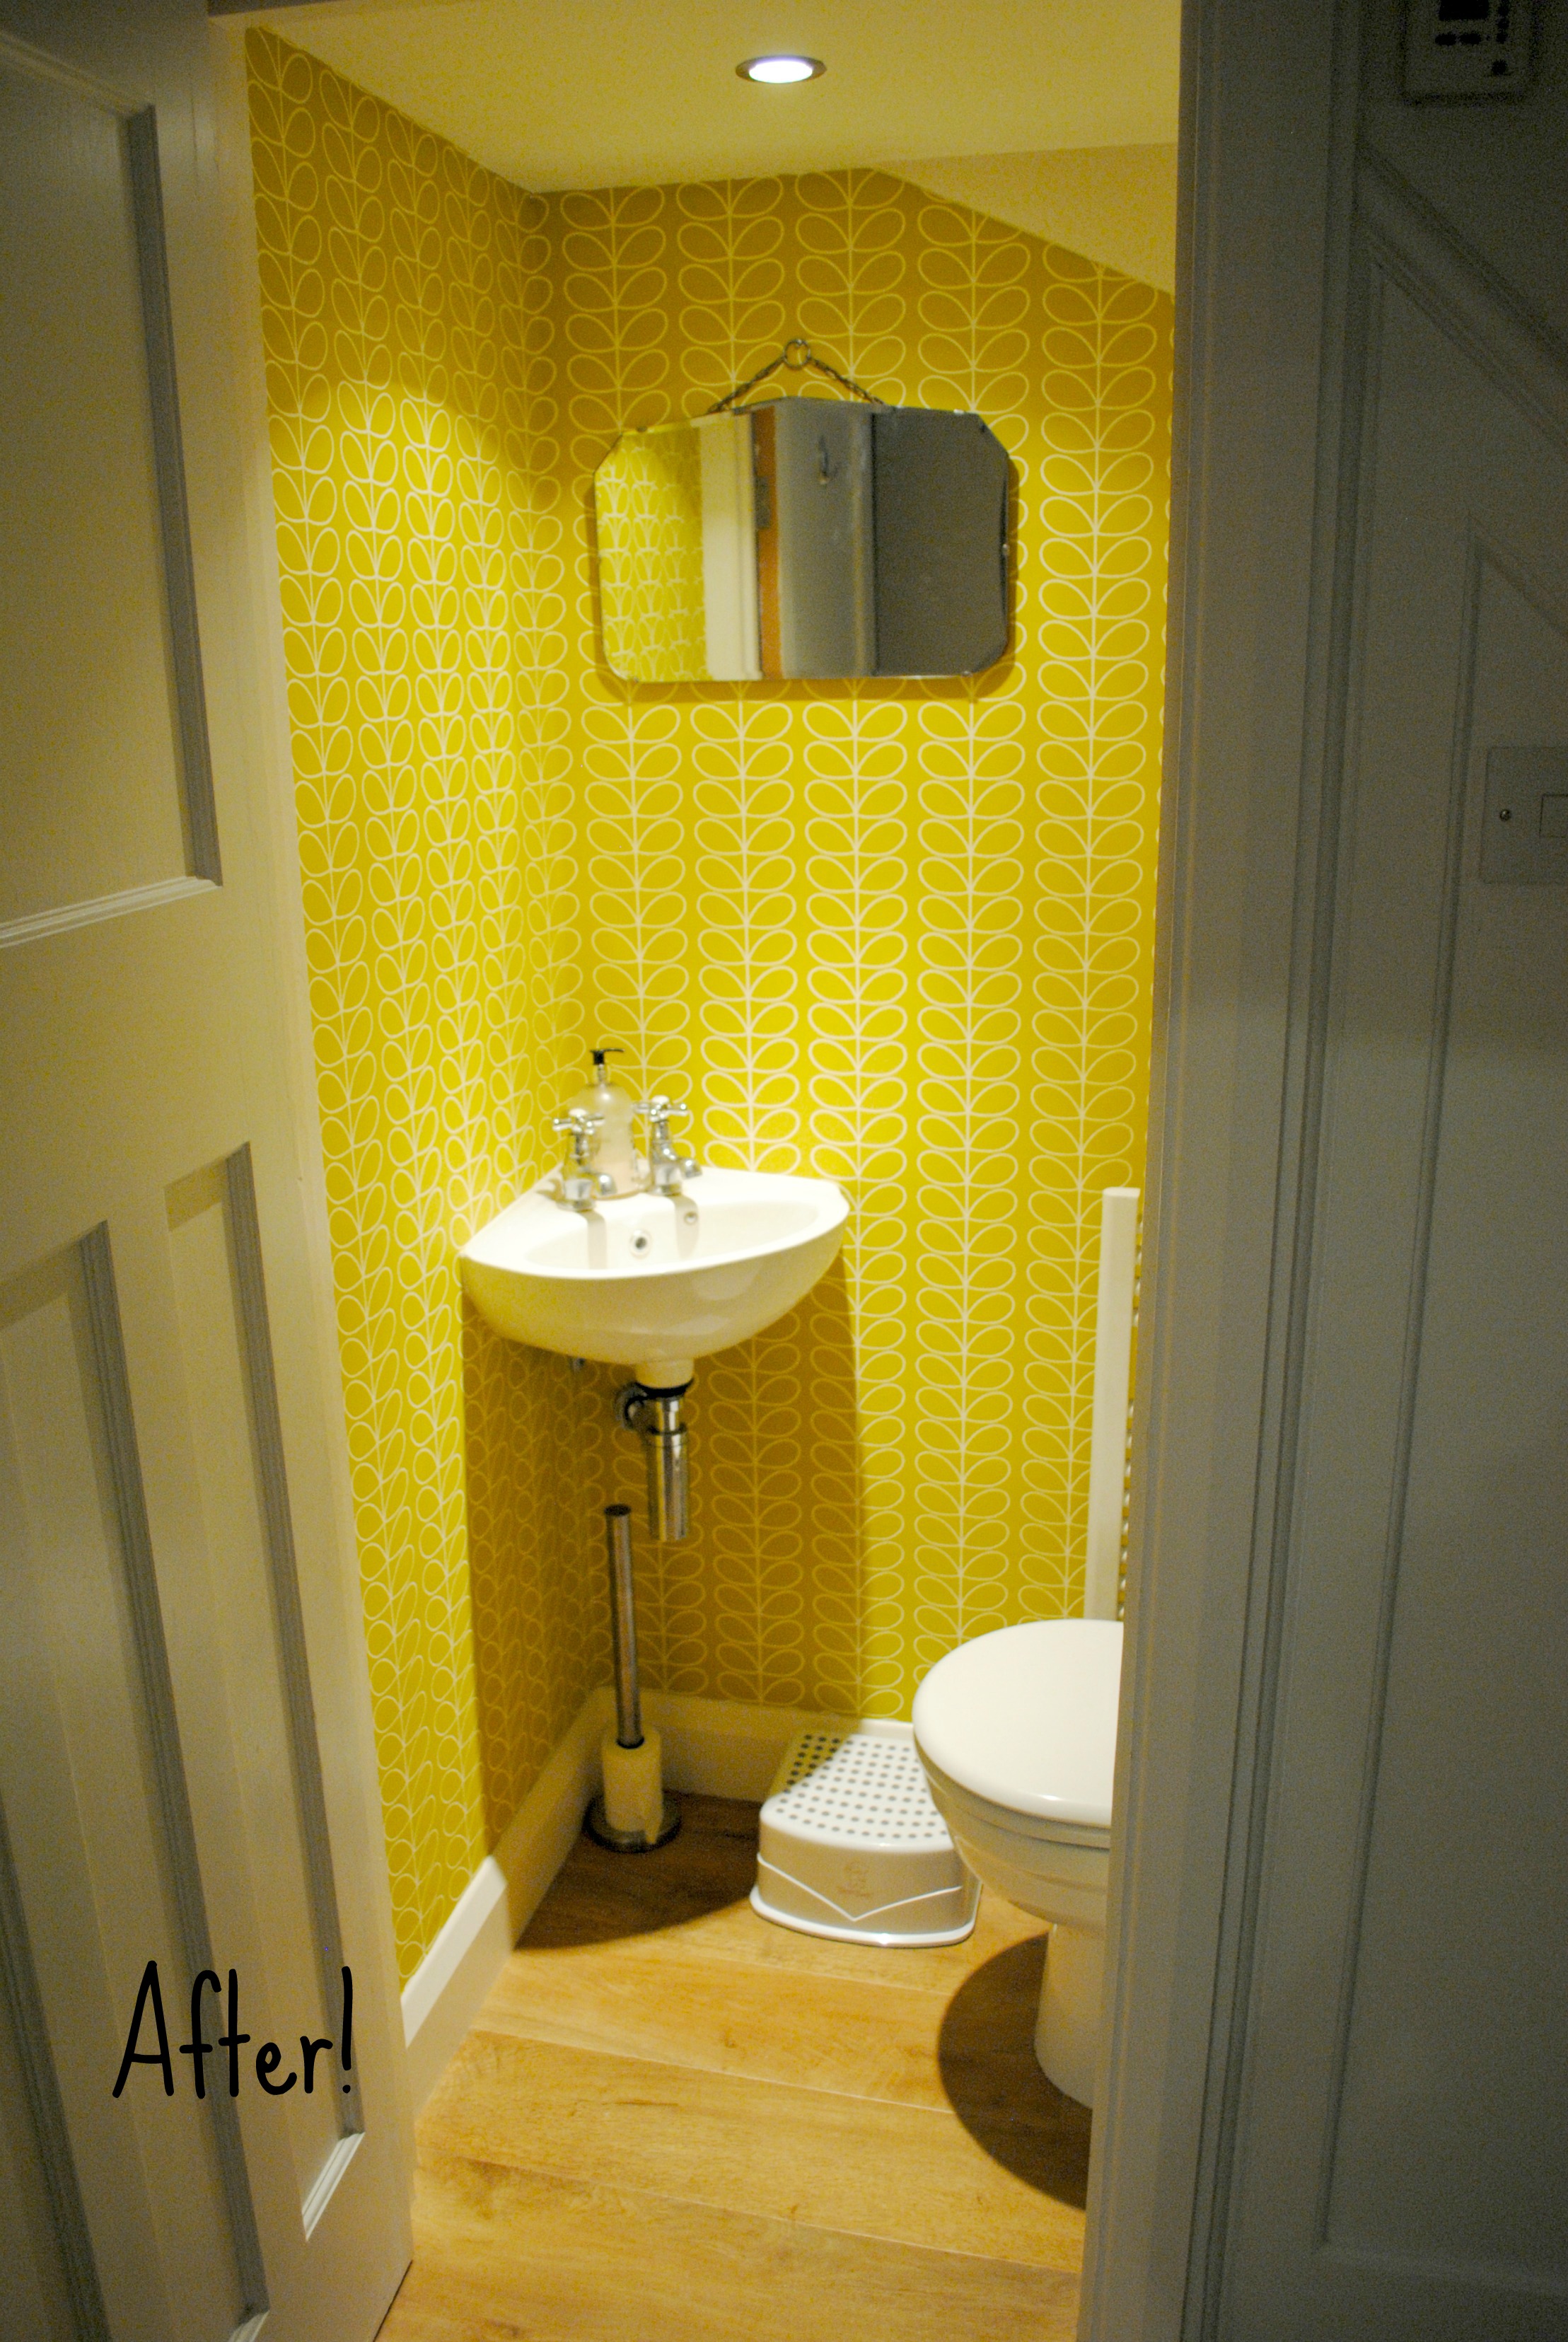 toilette toilette im erdgeschoss,badezimmer,zimmer,eigentum,gelb,fußboden